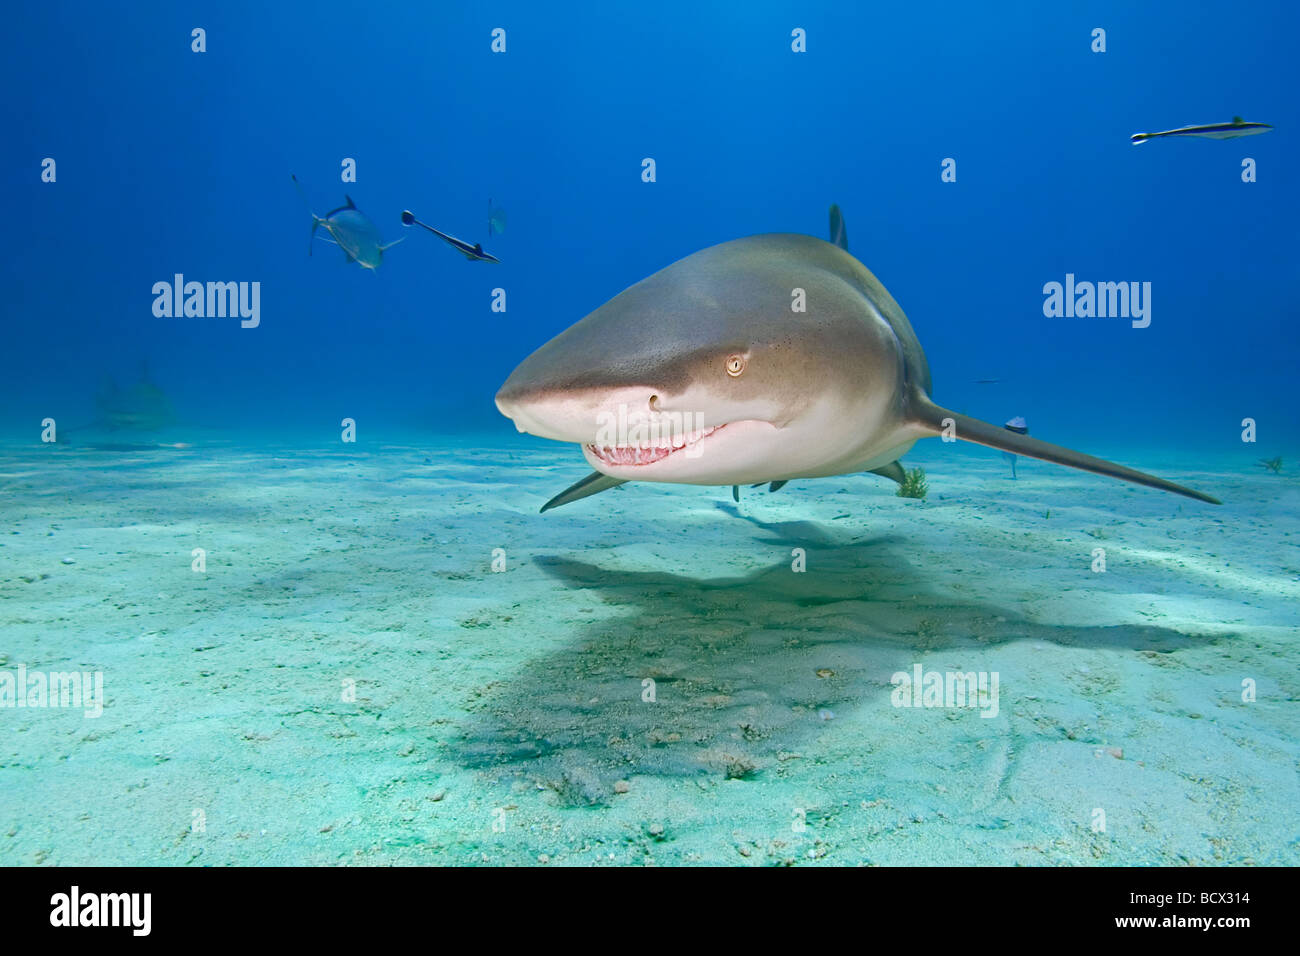 Le requin, Negaprion brevirostris, Océan Atlantique, France Banque D'Images